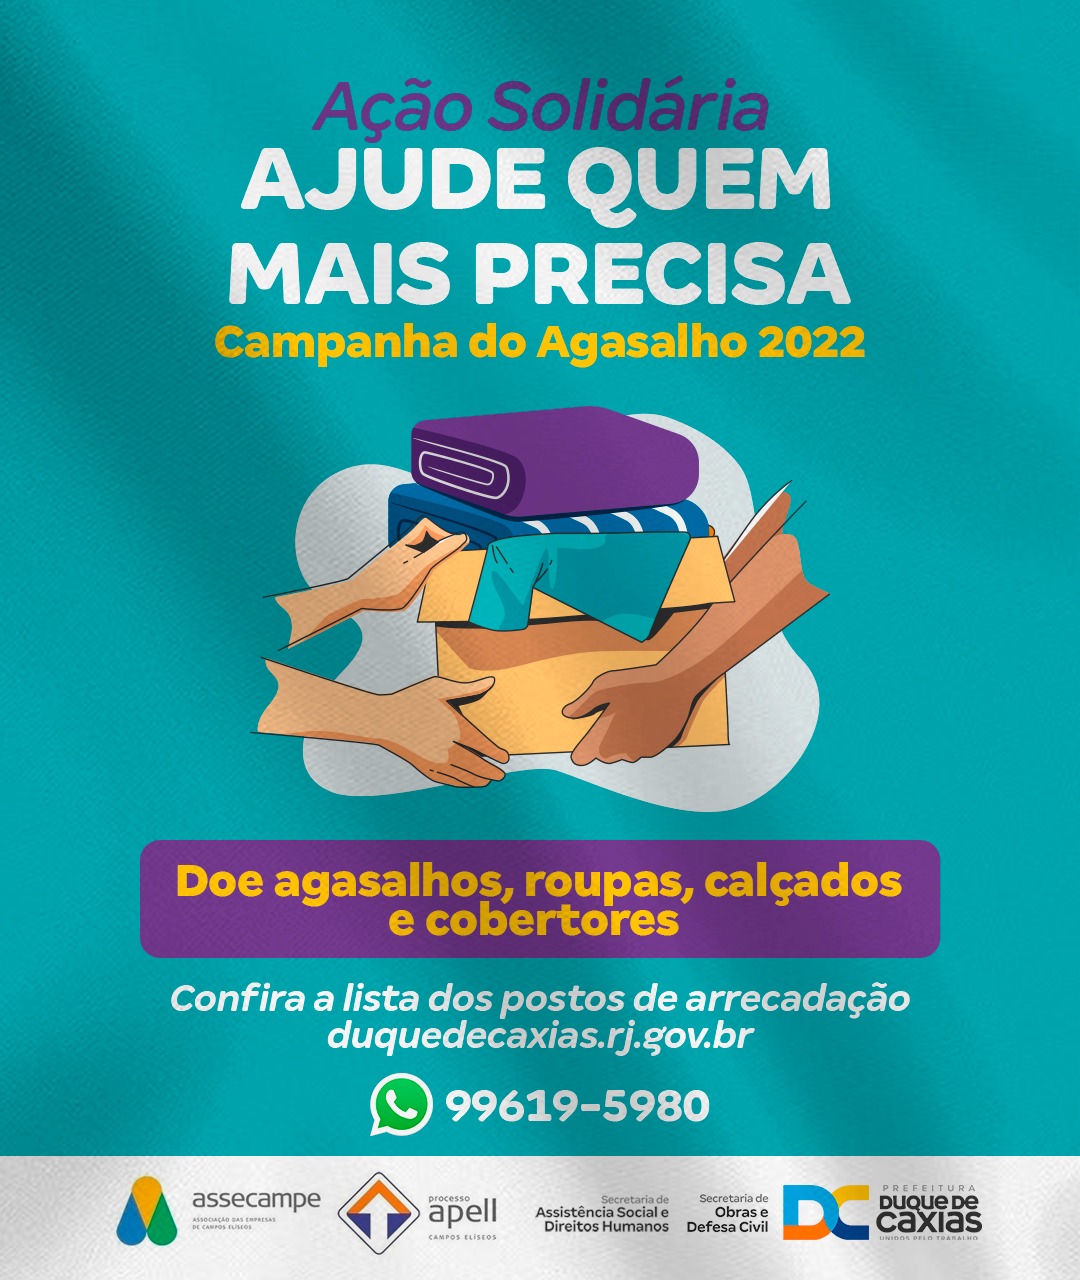 Prefeitura de Duque de Caxias faz campanha de doação de agasalhos